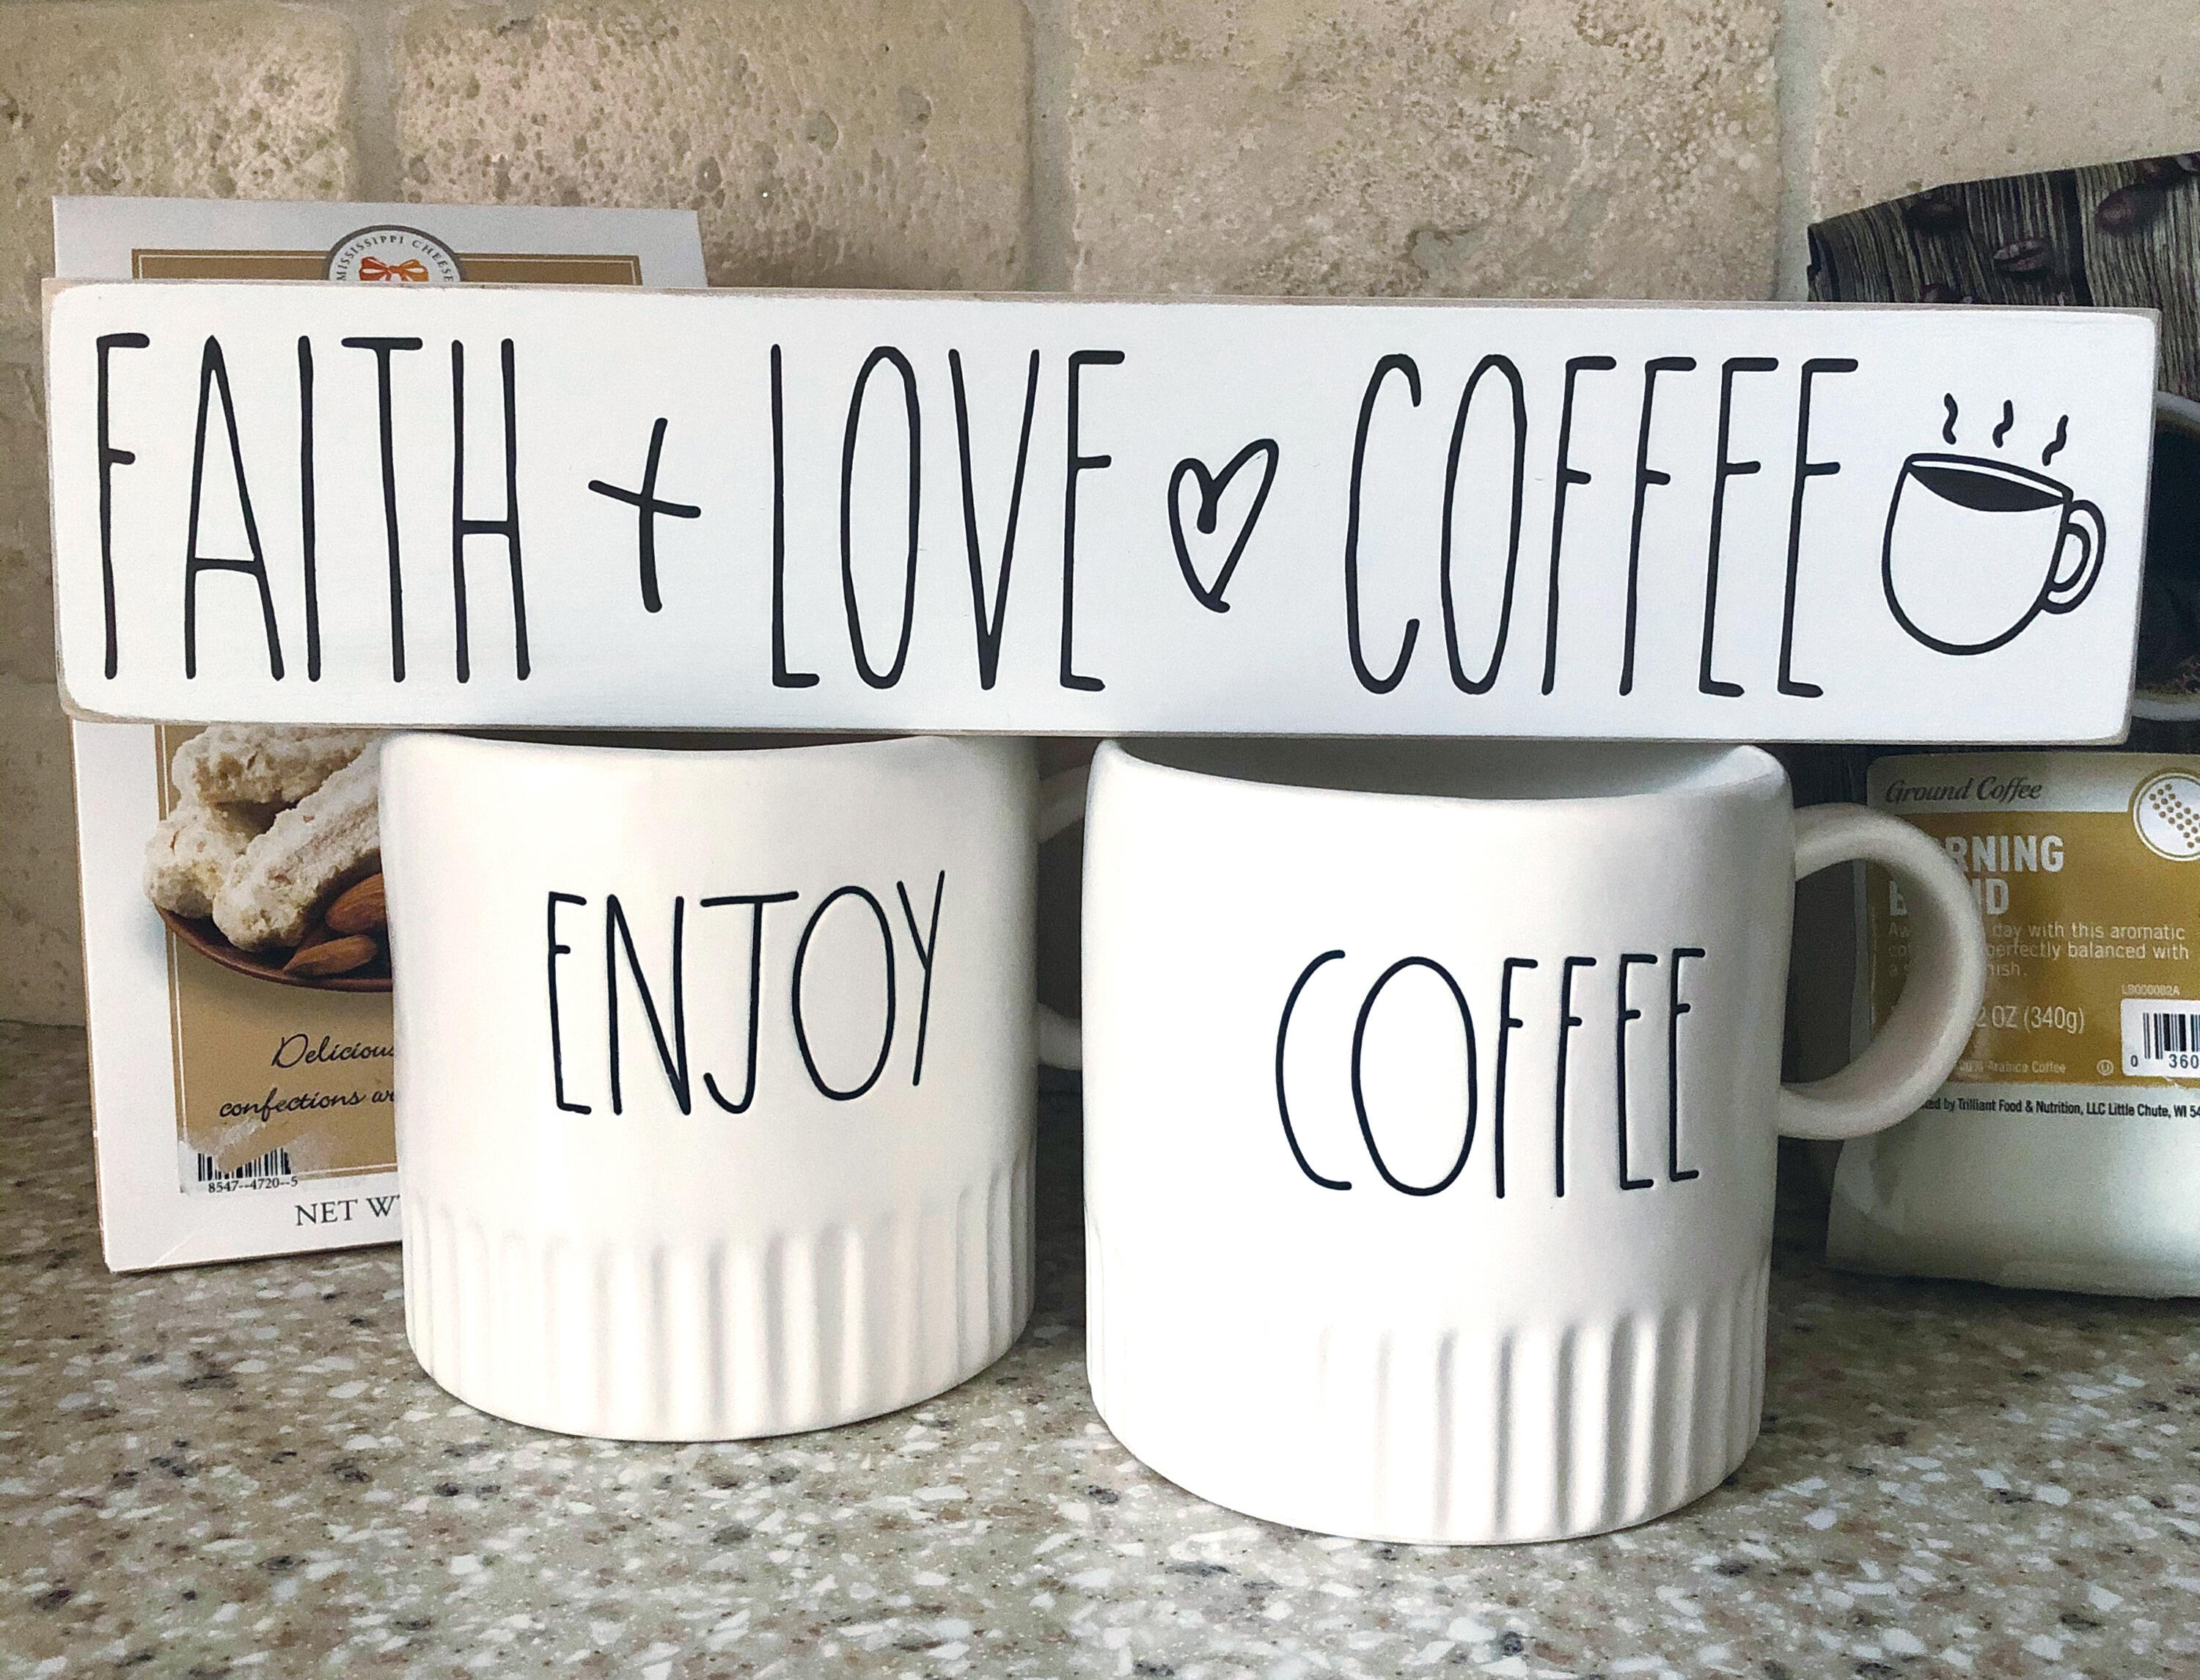 Faith Love and Coffee